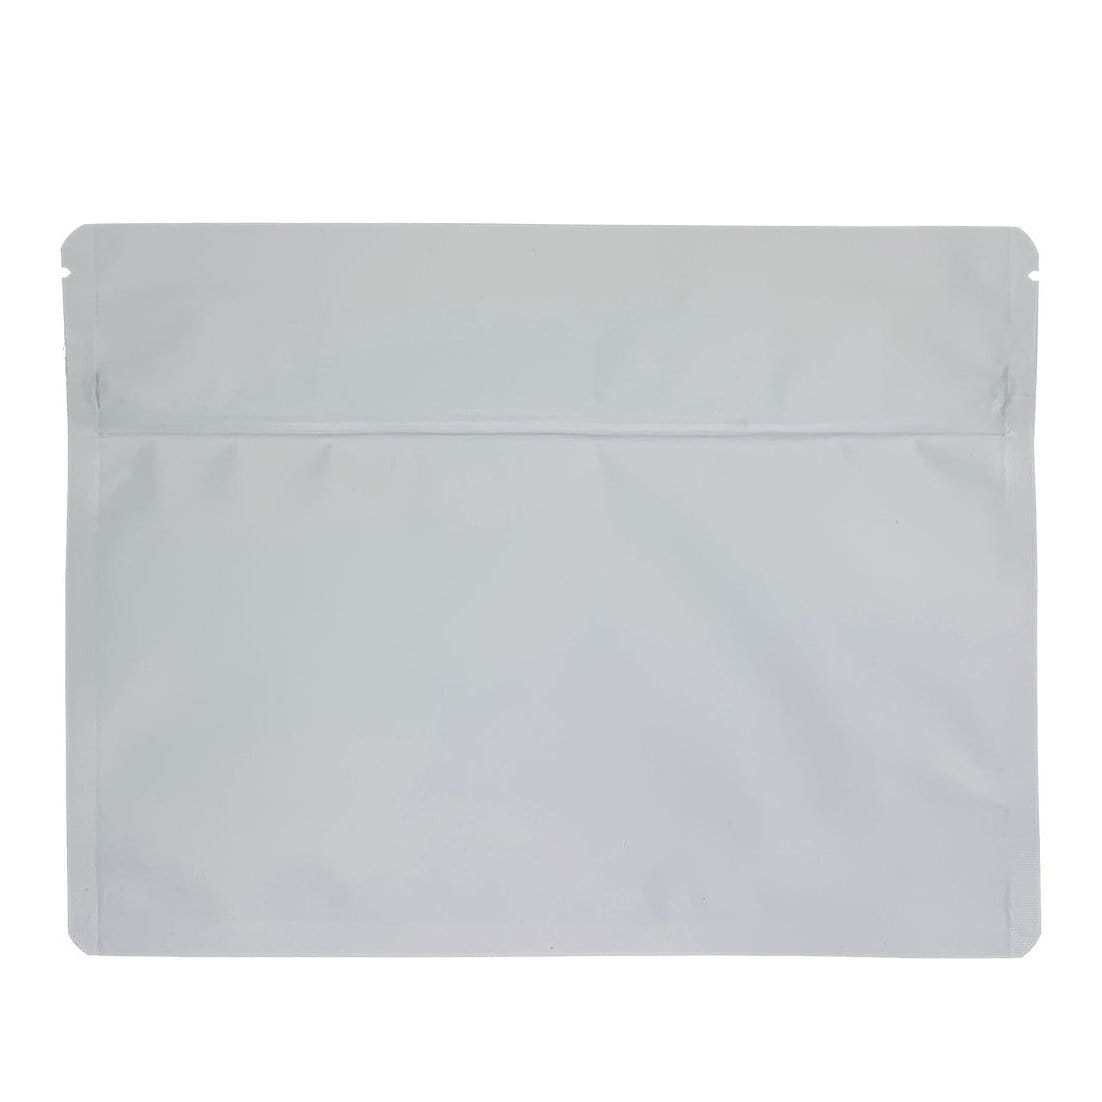 Matte White Bag King Large Child-Resistant Opaque Exit Bag (1/2 lb) 9.0